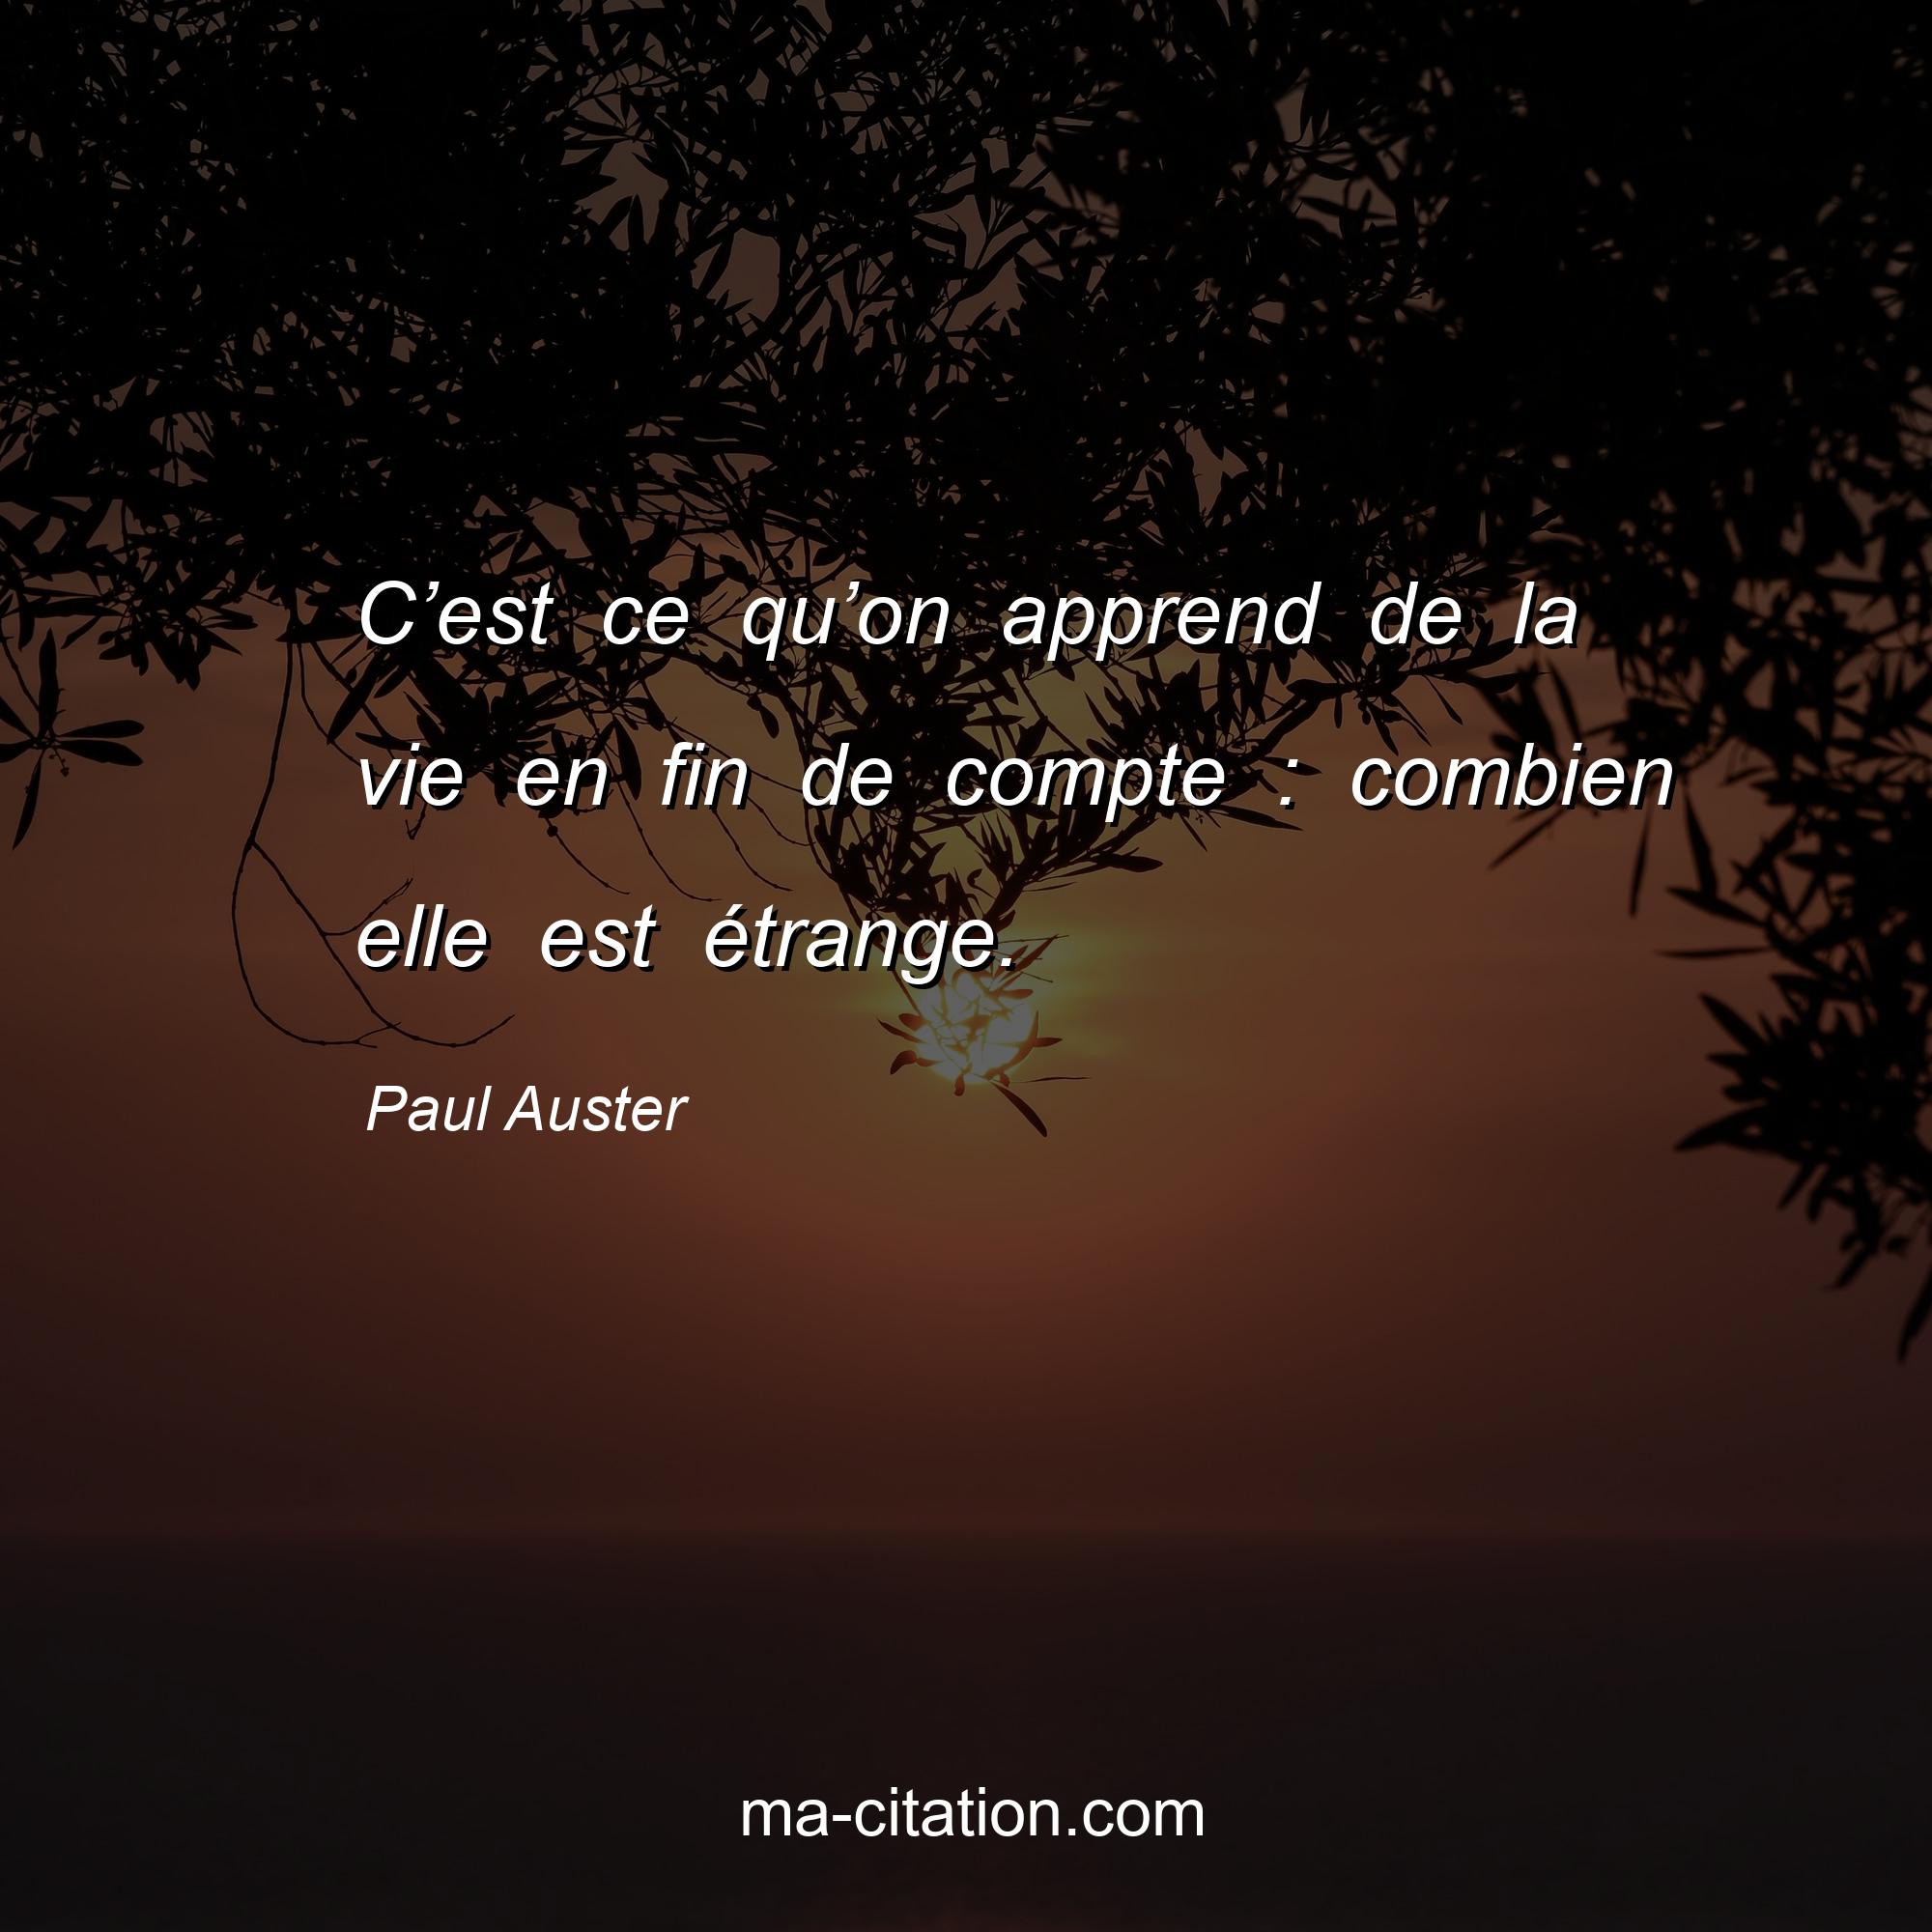 Paul Auster : C’est ce qu’on apprend de la vie en fin de compte : combien elle est étrange.